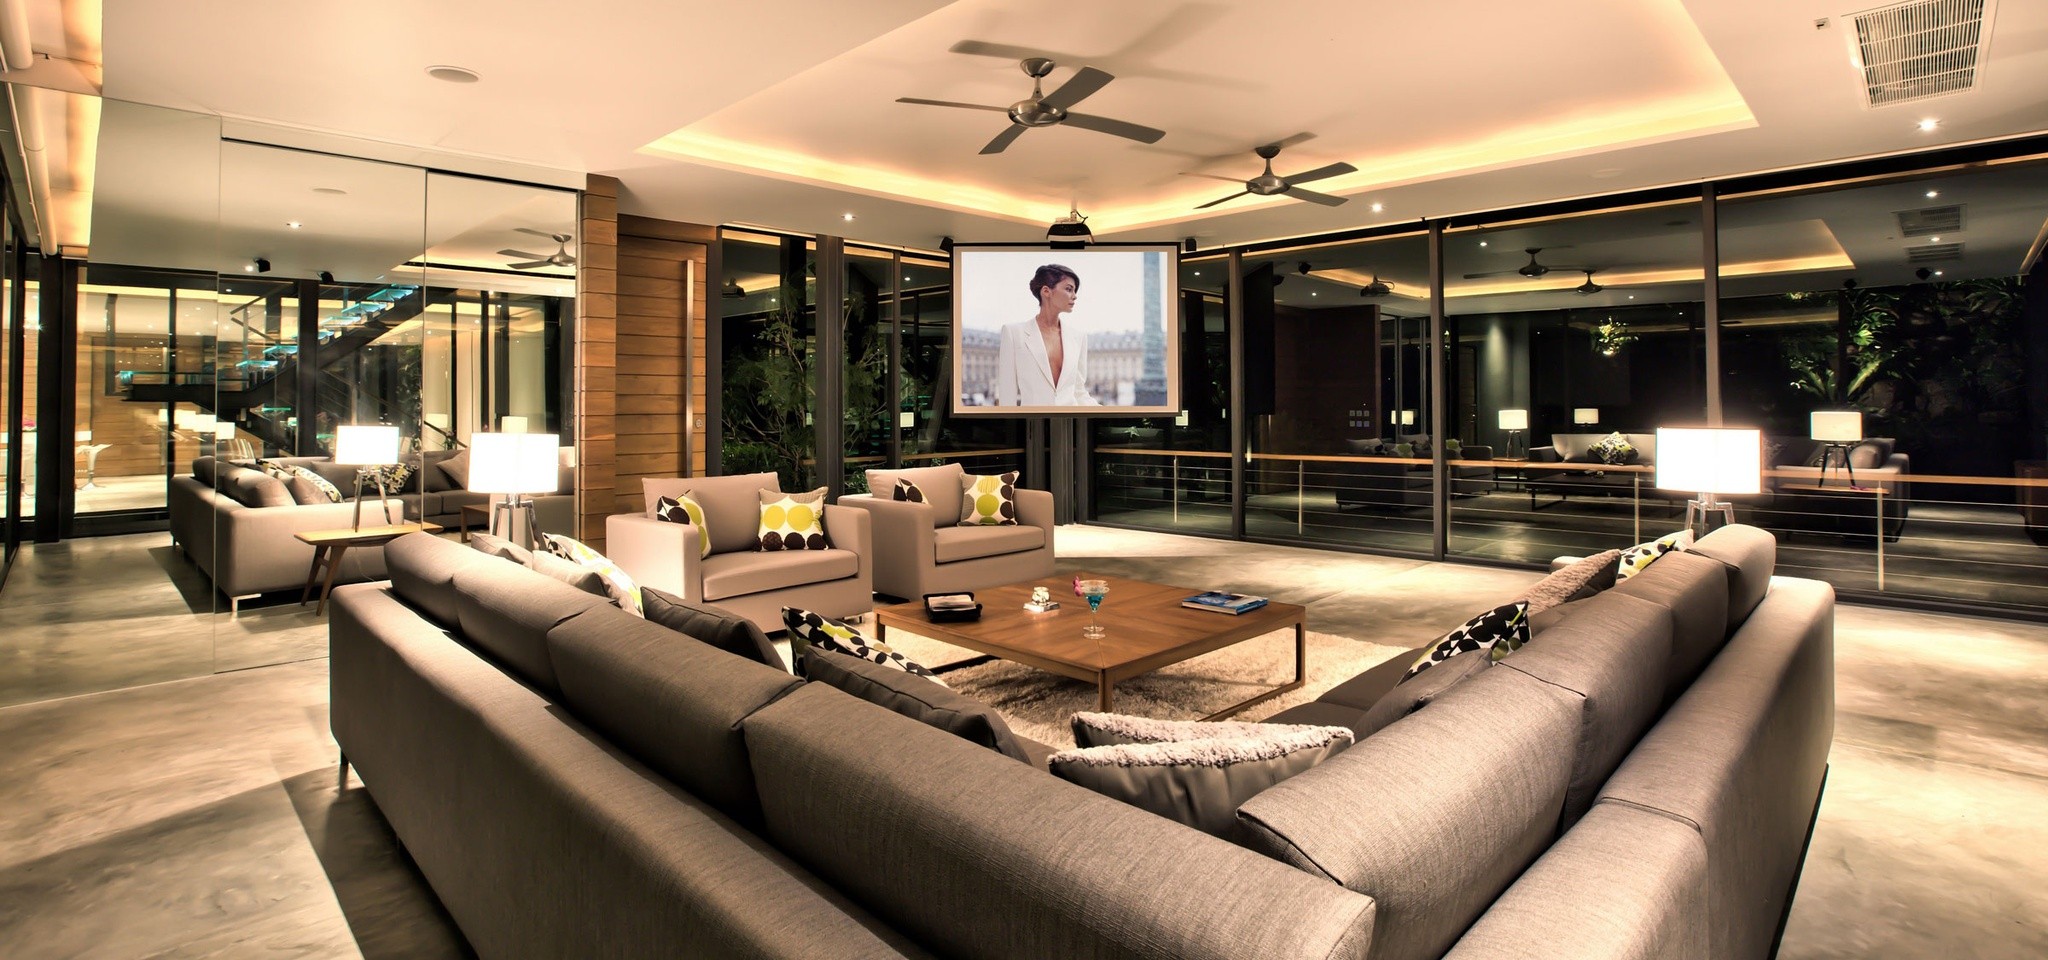 TheView Living Room – The View Samui – Samui – Thailand